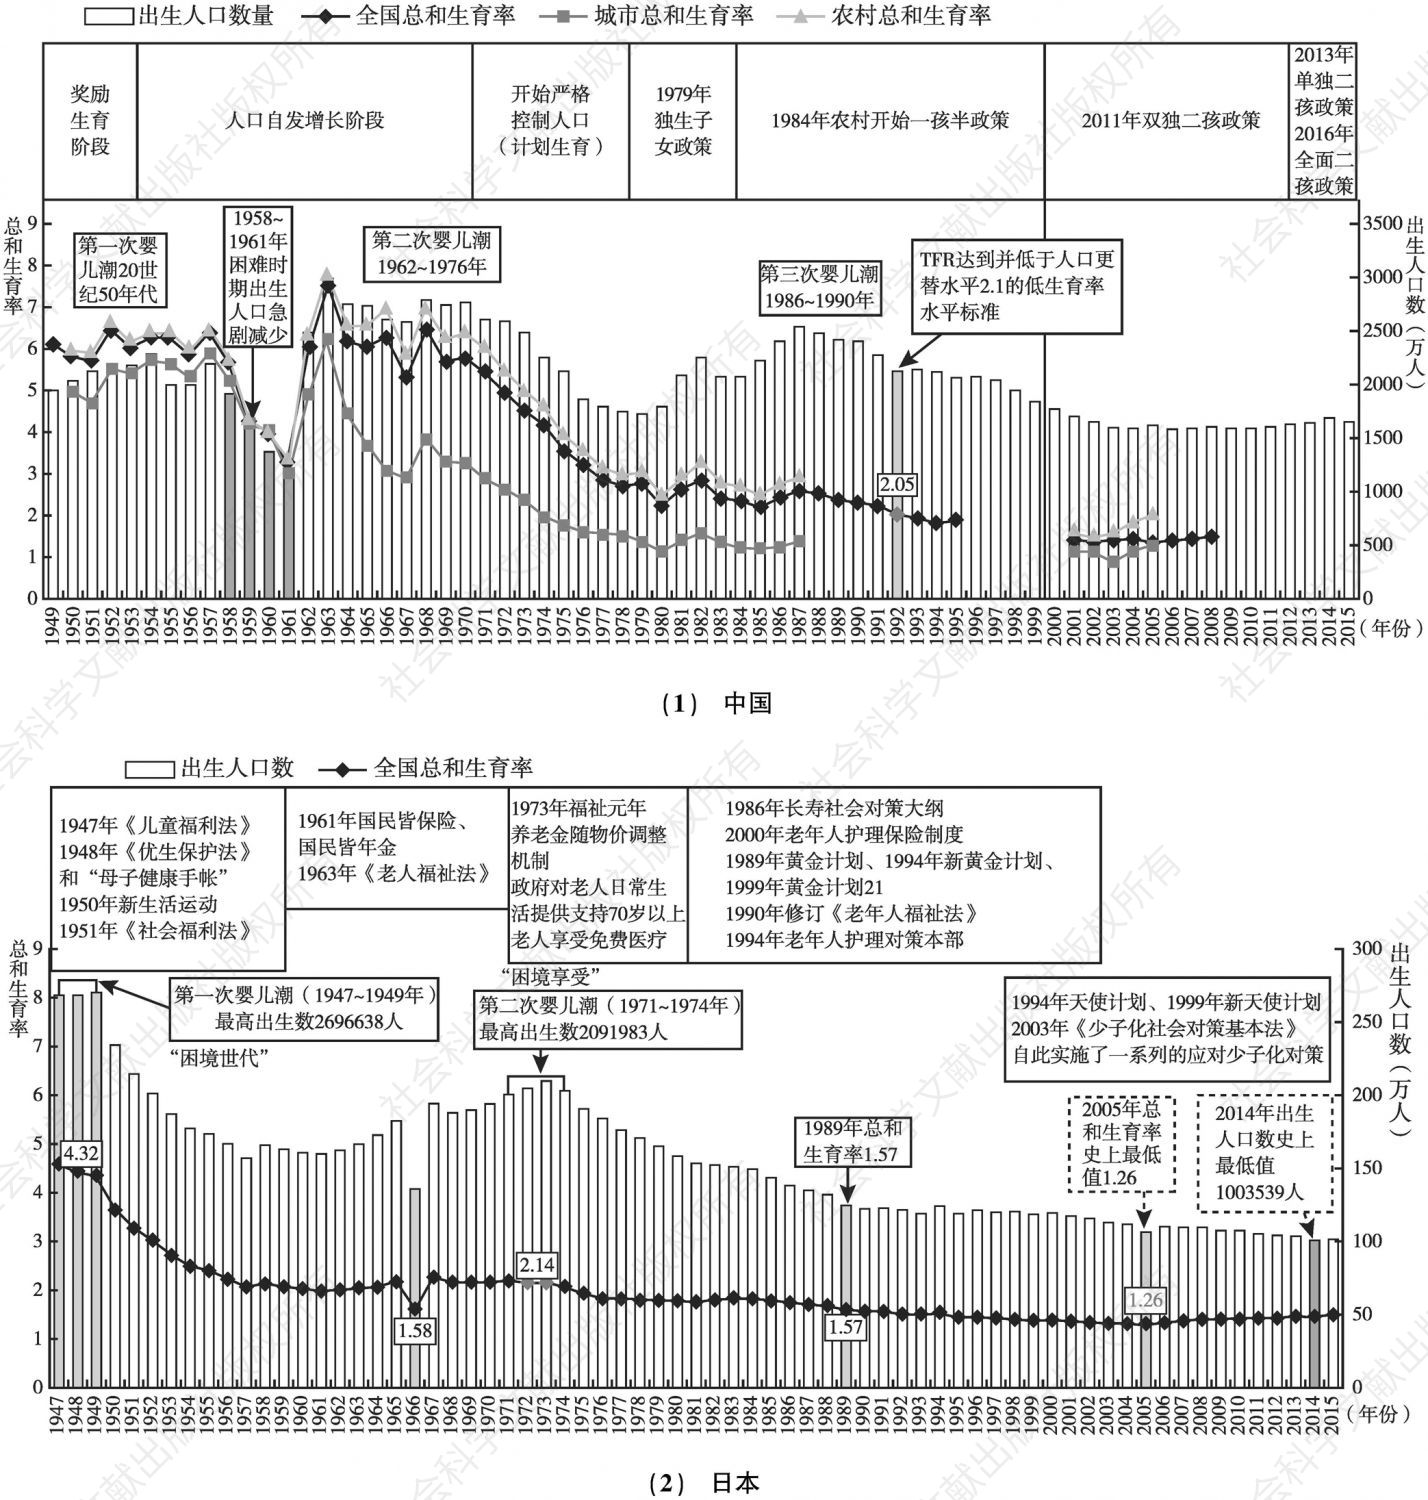 图12-1 中日出生人口及总和生育率的发展比较